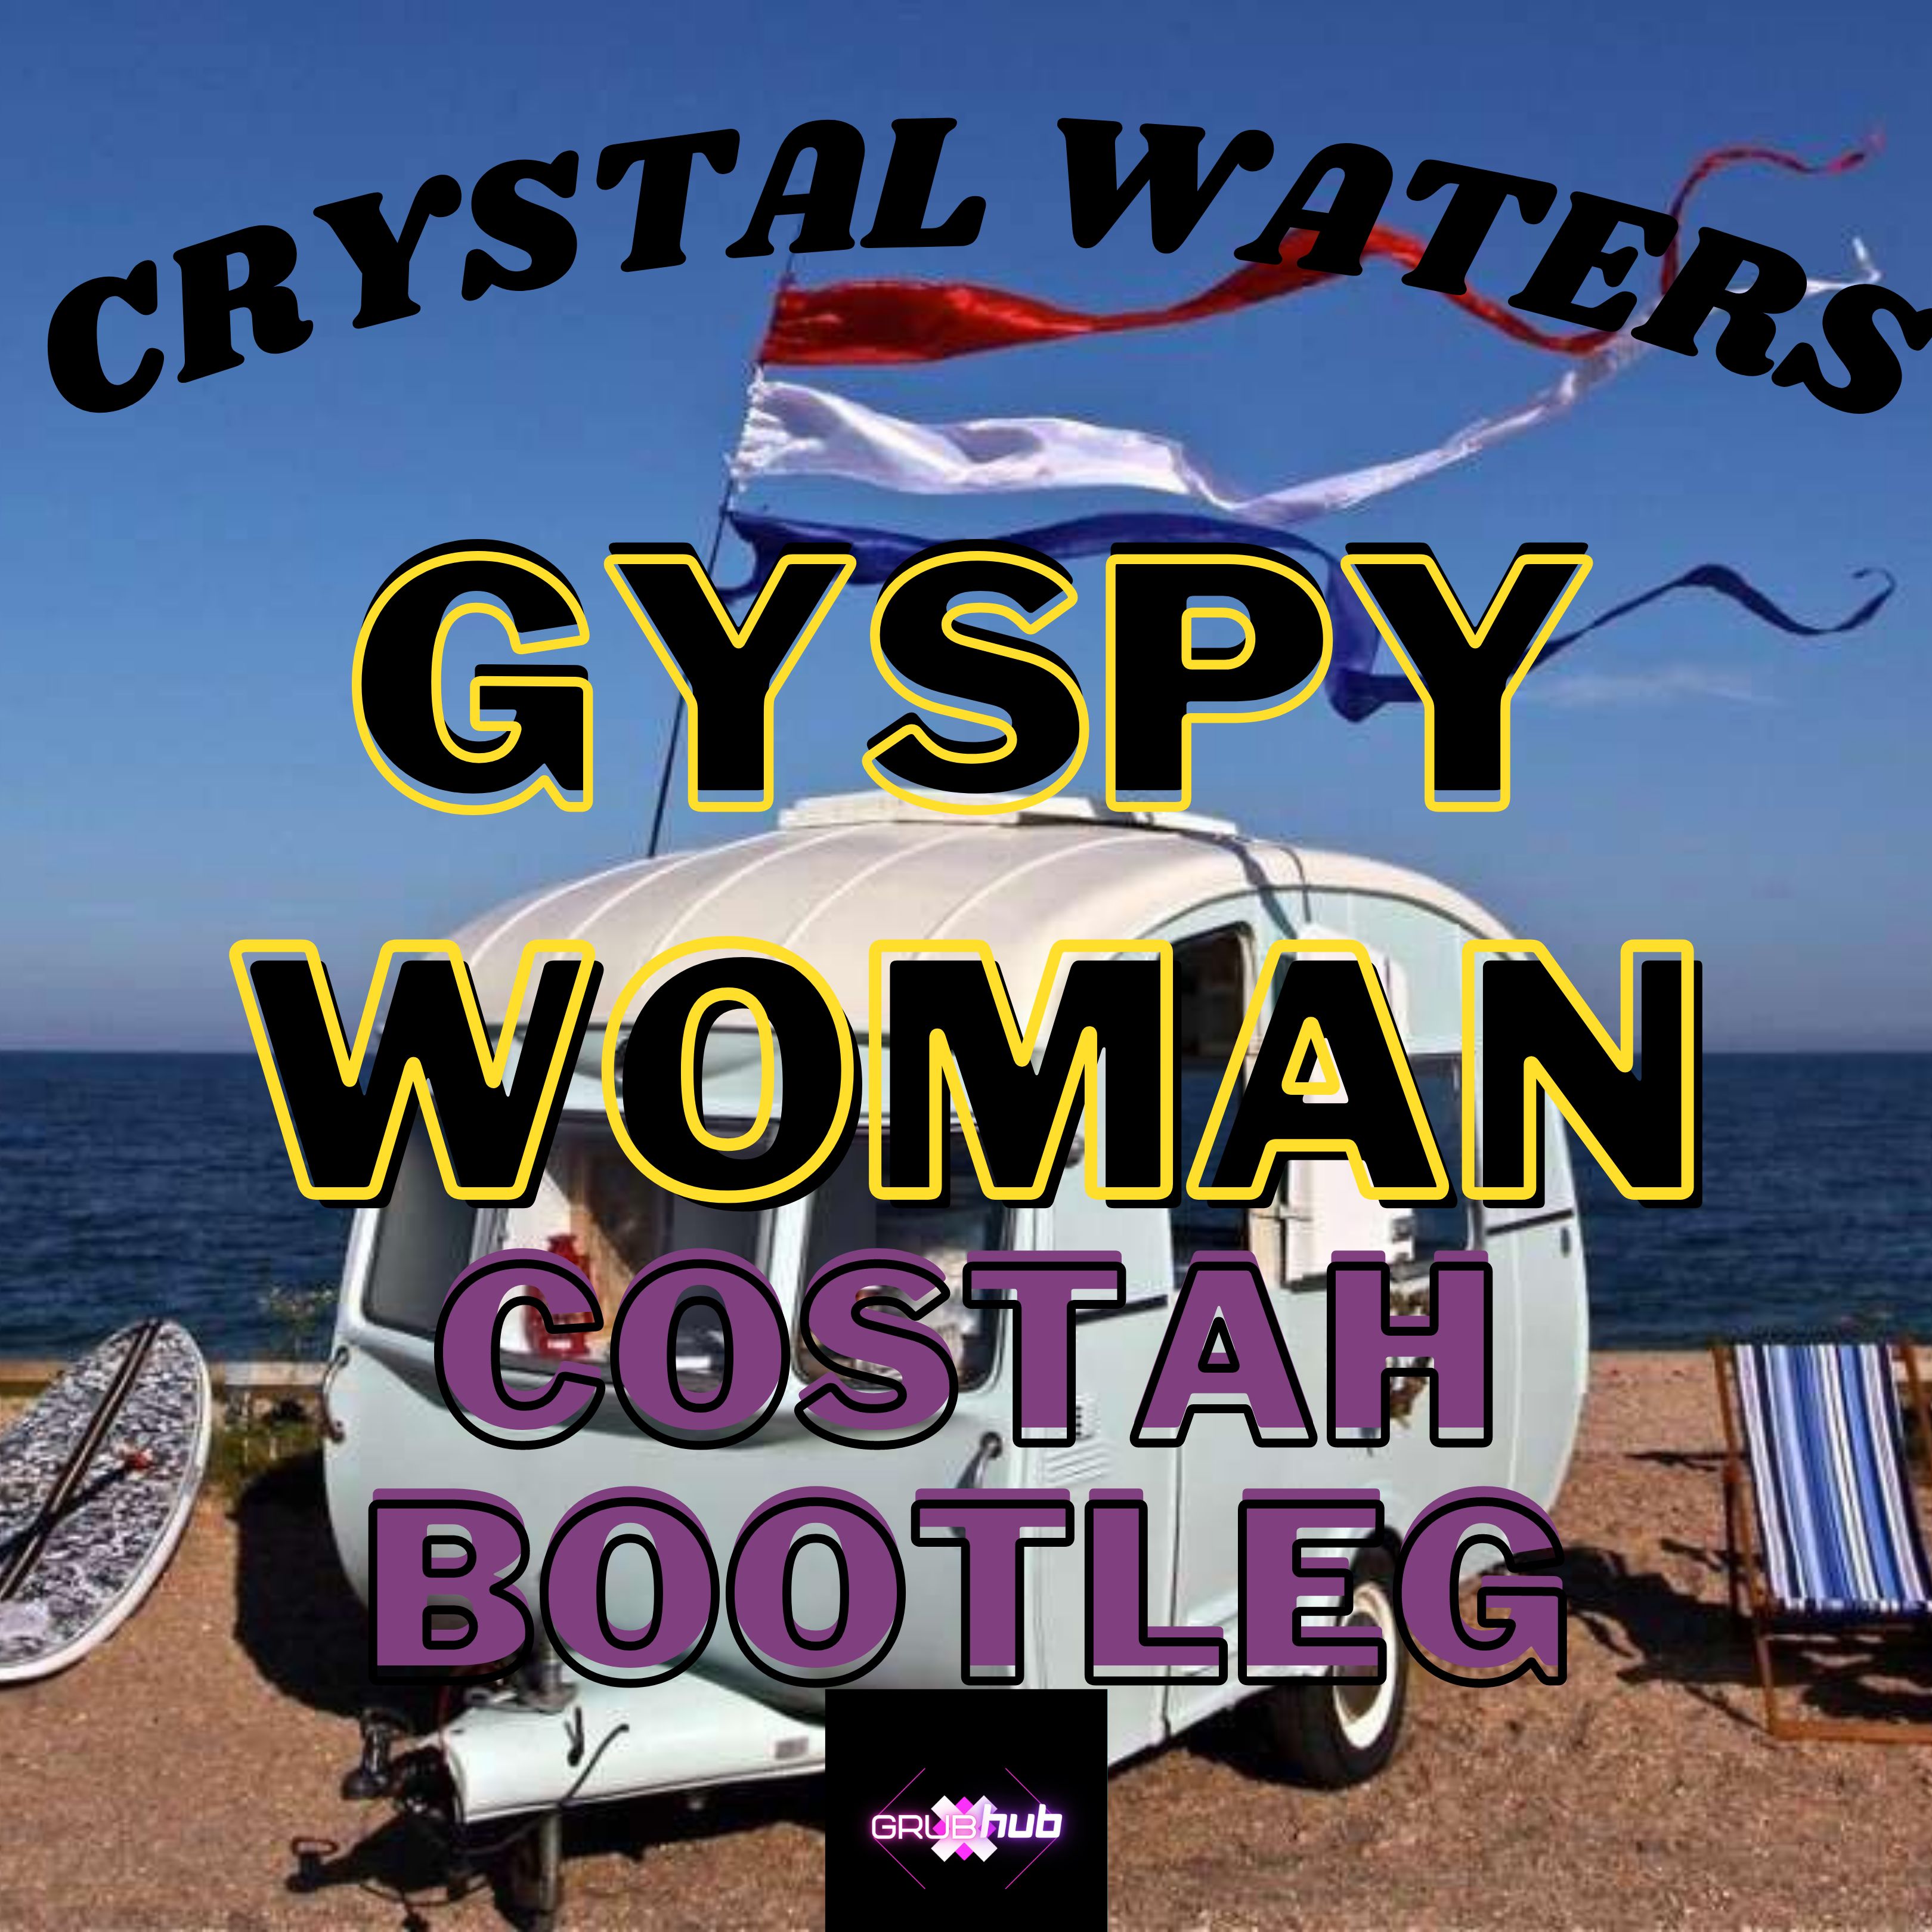 ¡Descargar Crystal Waters - Gypsy Woman (Costah Bootleg) FREE DOWNLOAD